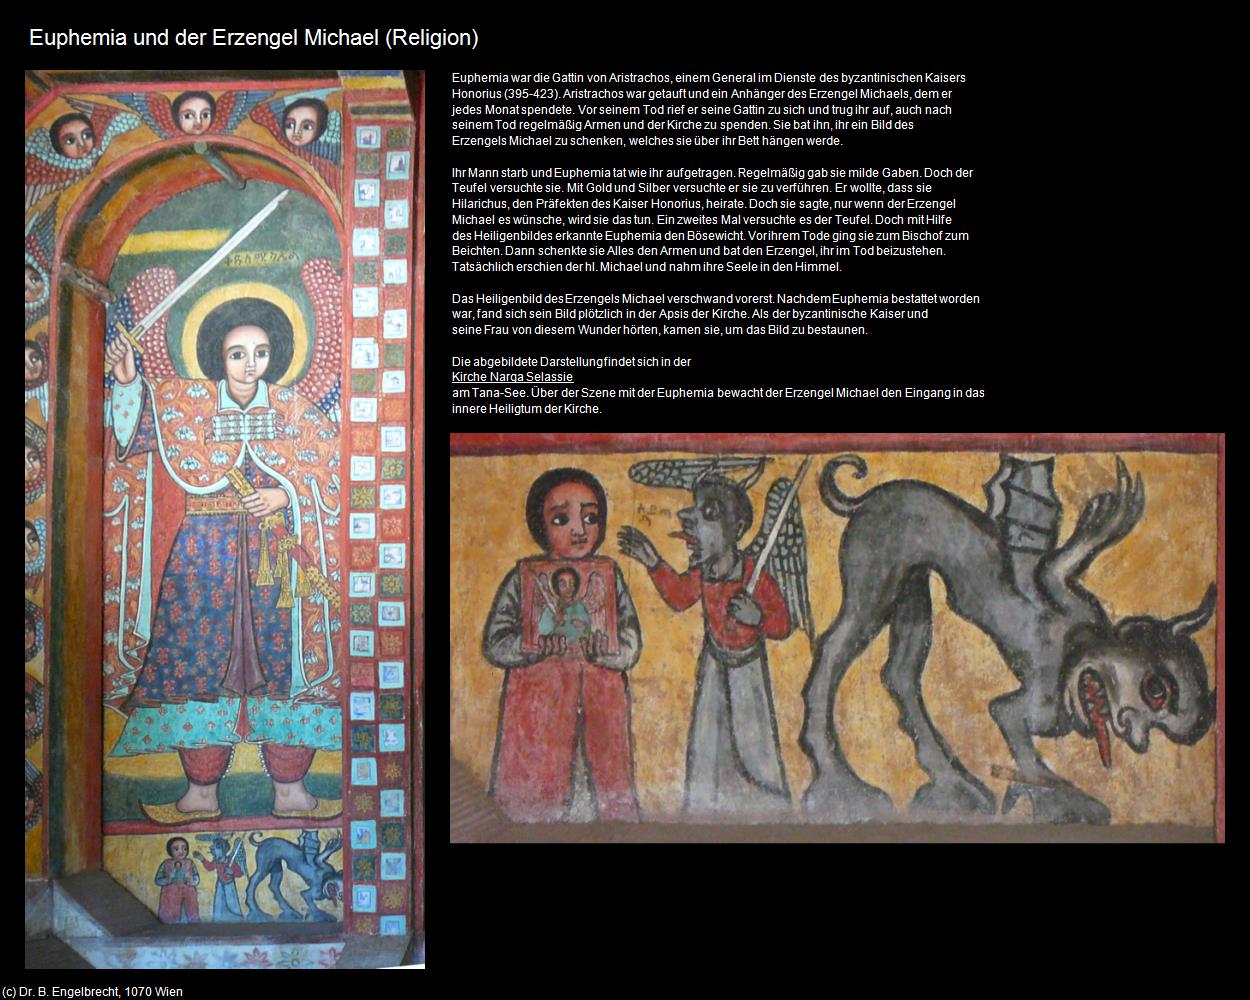 Euphemia und der Erzengel Michael  (+Religion) in Äthiopien(c)B.Engelbrecht